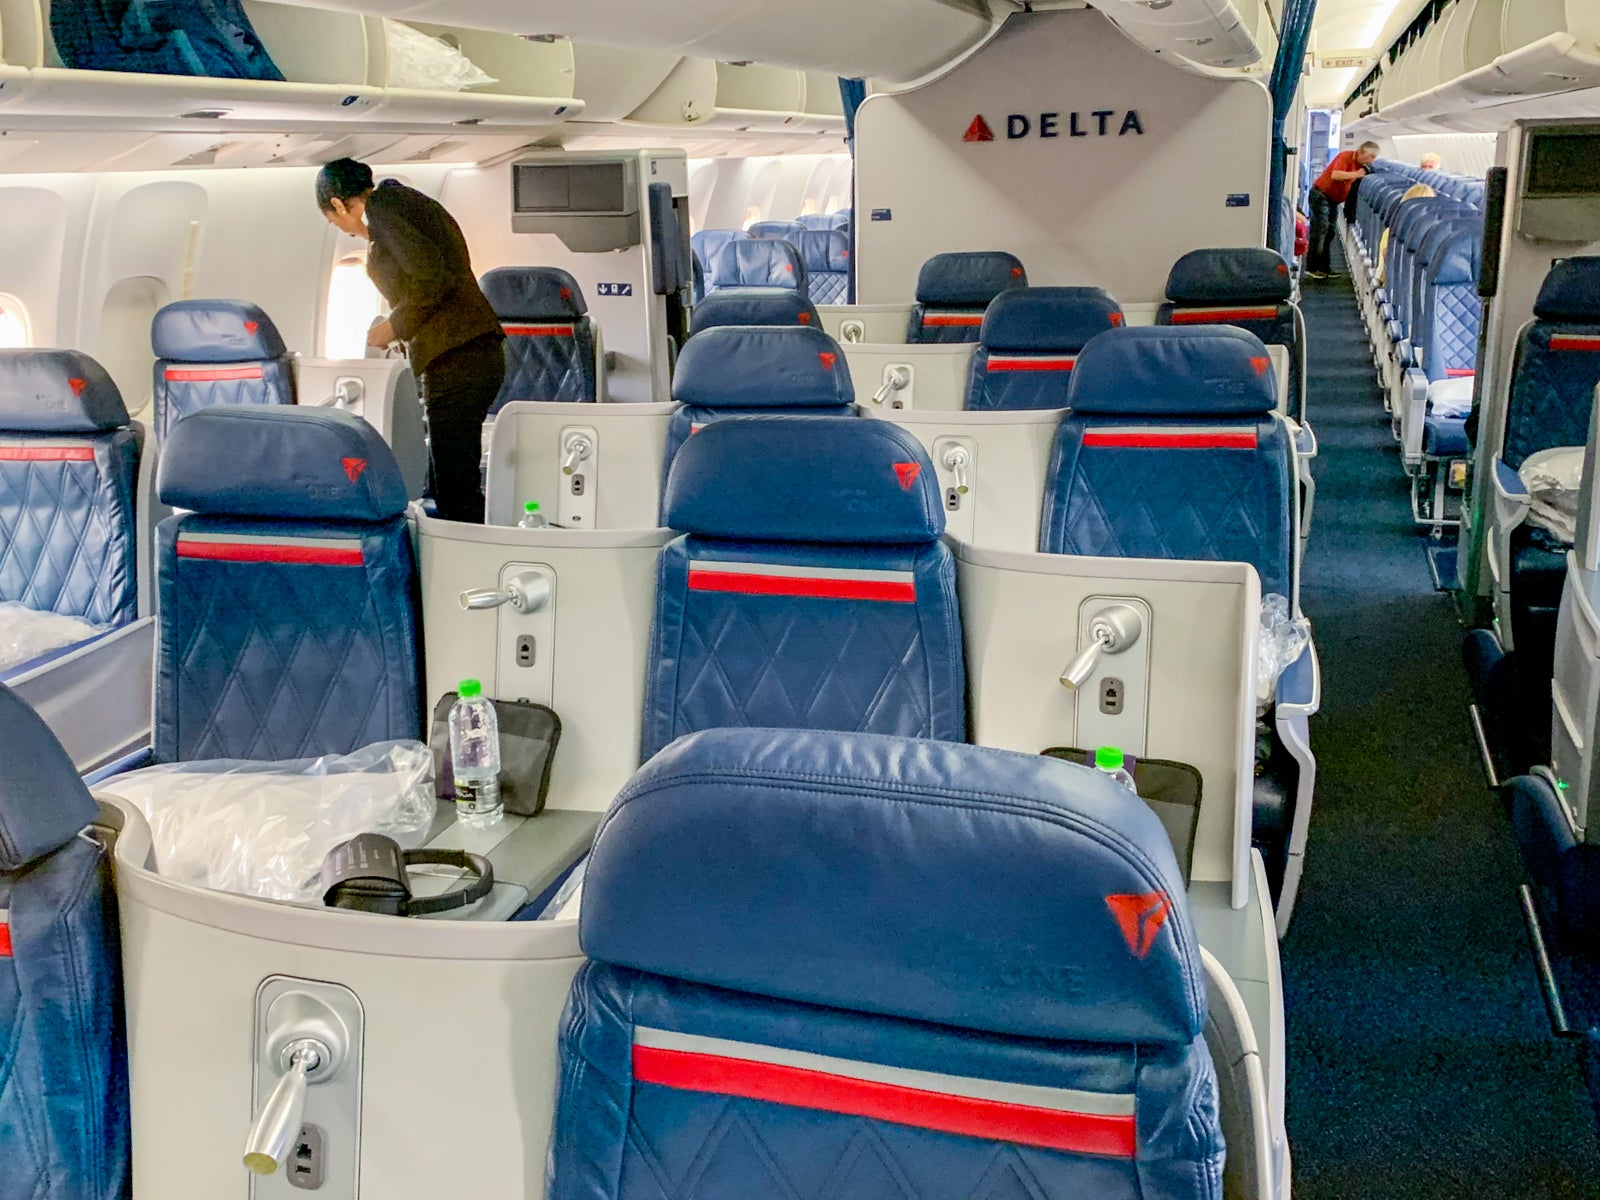 Delta Boeing 767-300ER business class cabin